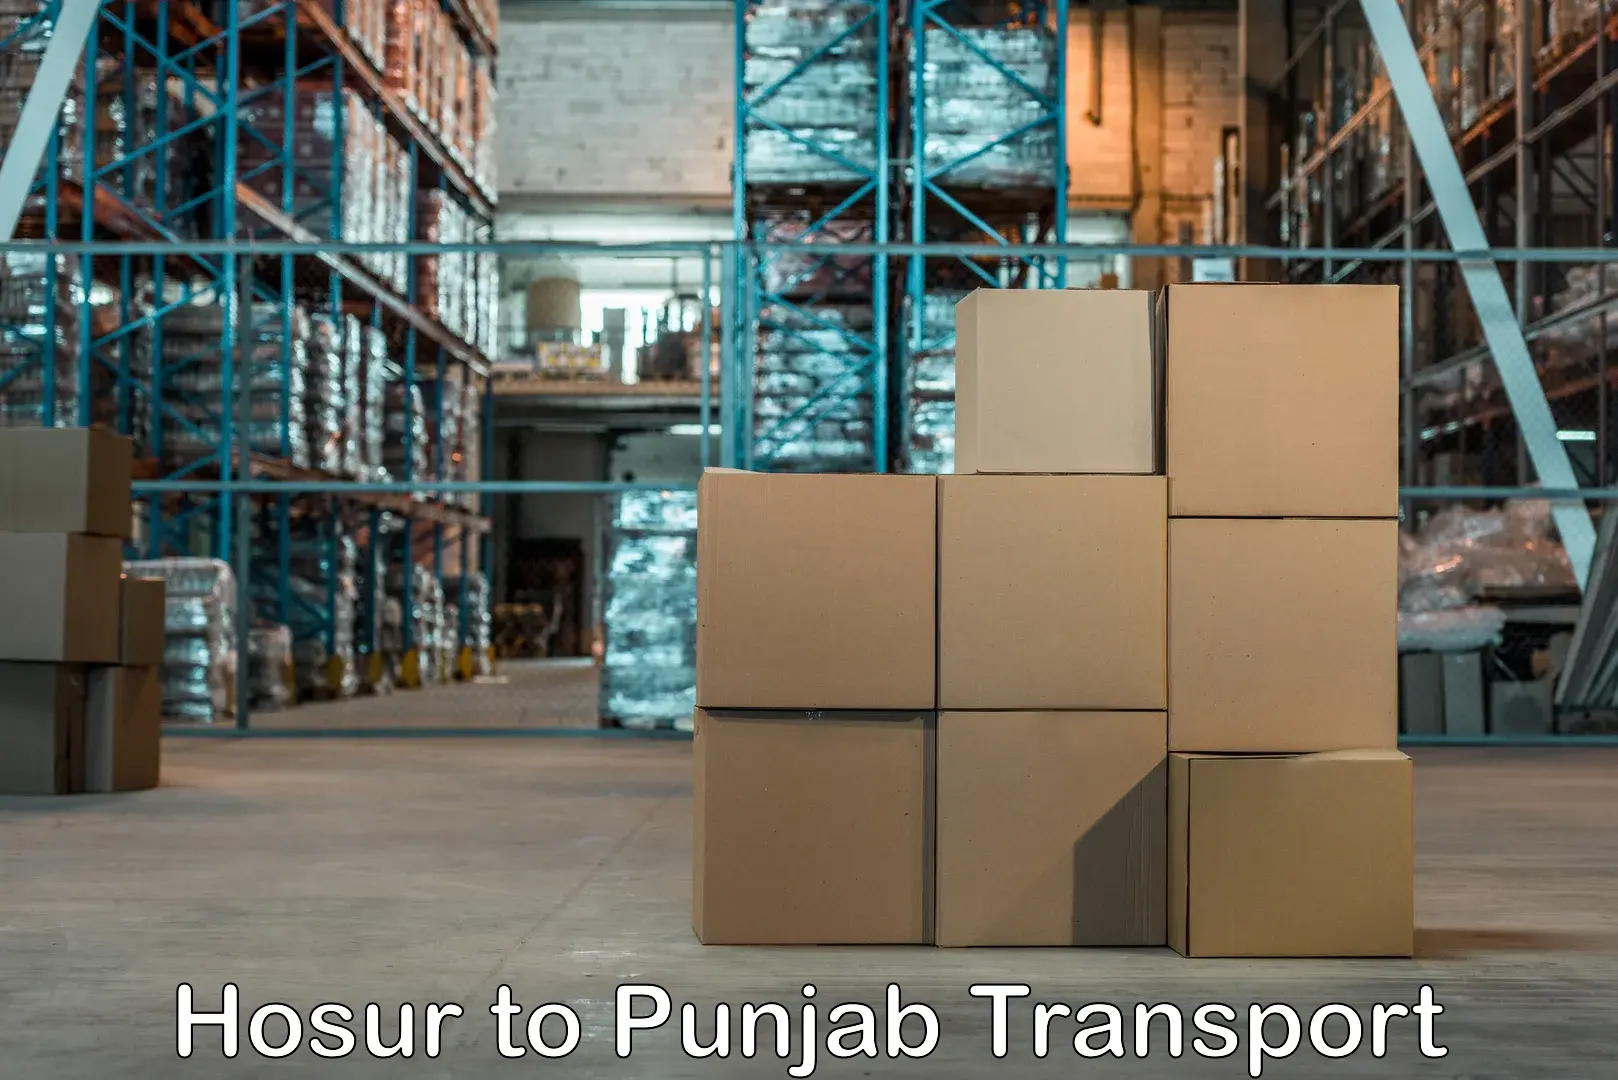 Transport in sharing Hosur to Punjab